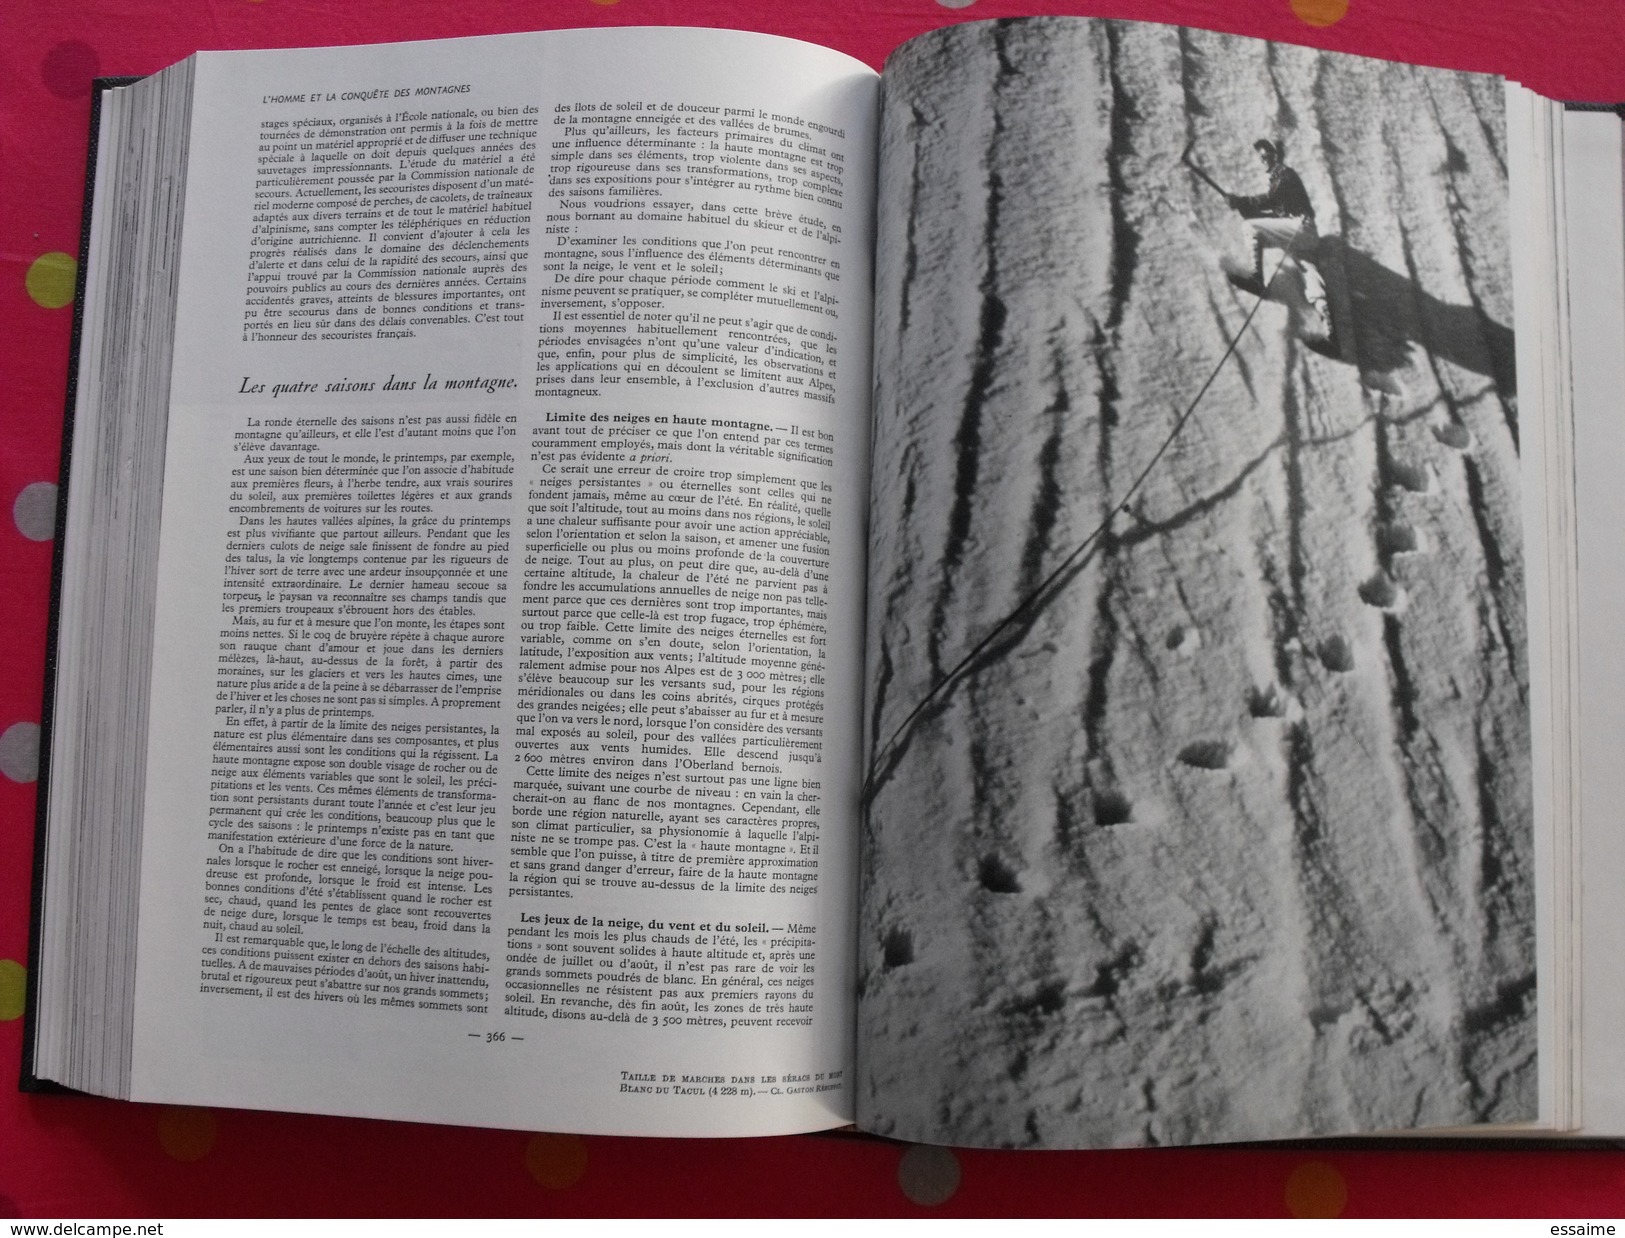 La montagne. Maurice Herzog. édit. Larousse 1956. 476 pages. nombreuses photos. encyclopédie.